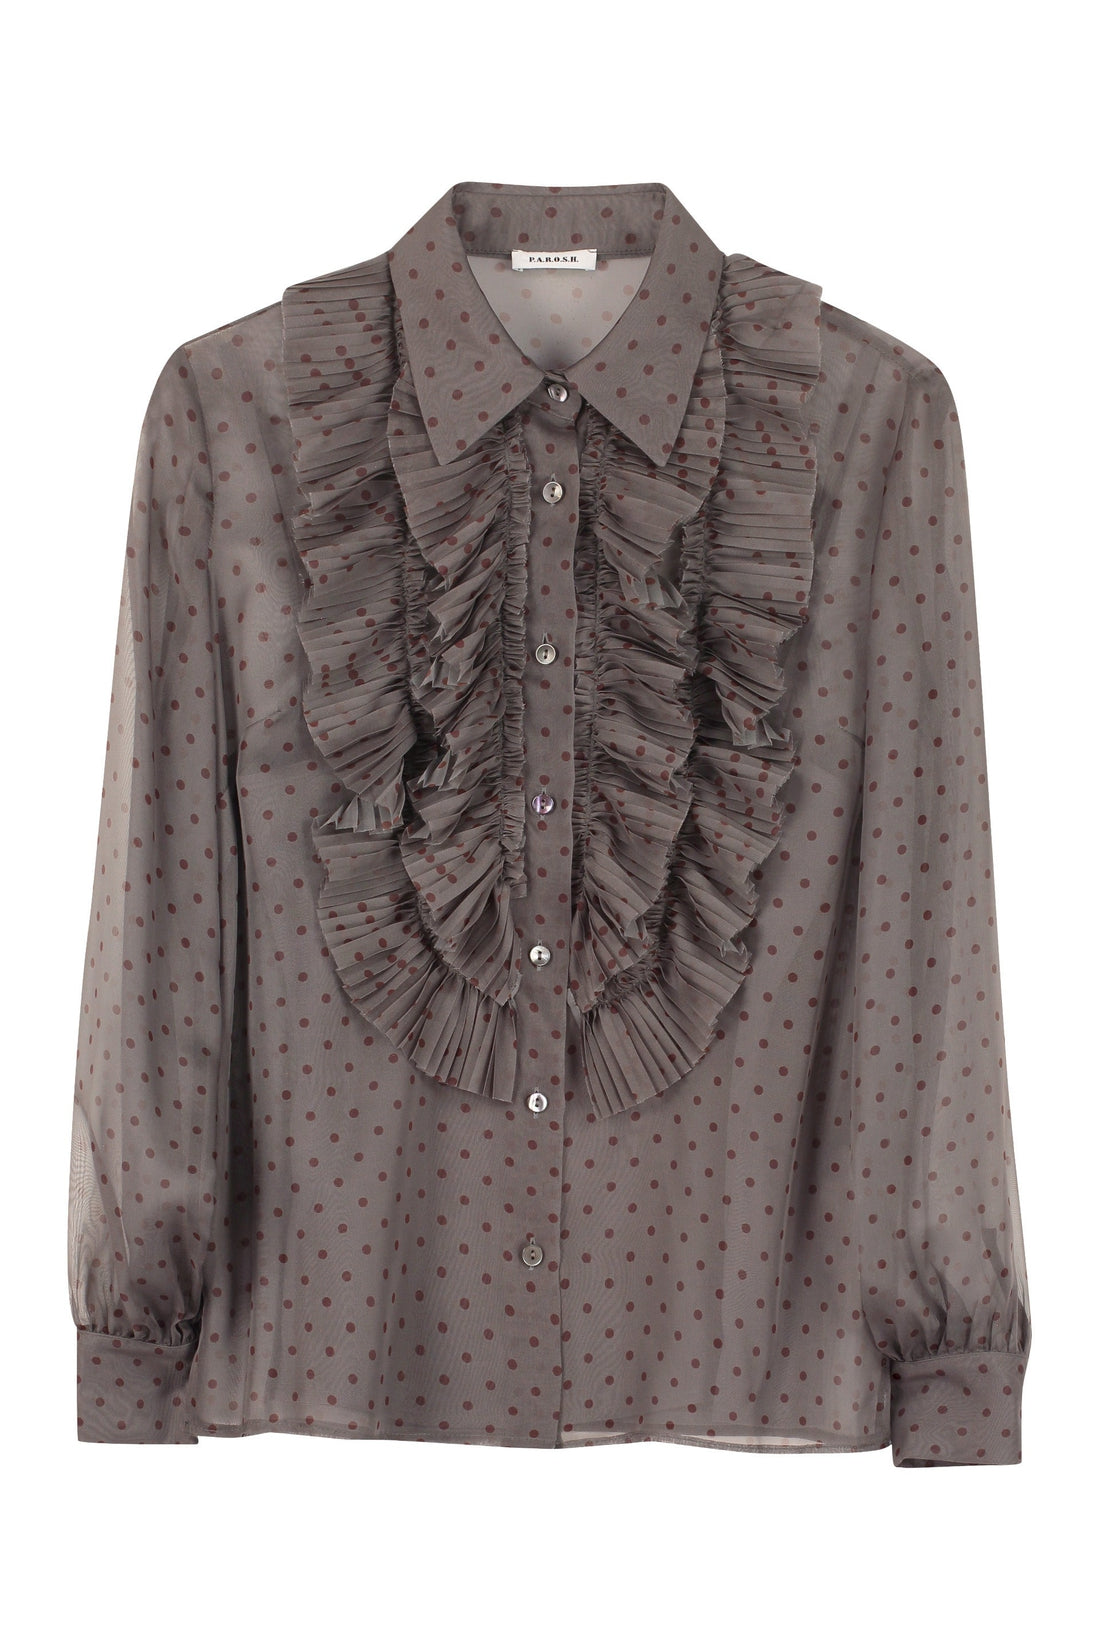 Parosh-OUTLET-SALE-Printed chiffon shirt-ARCHIVIST